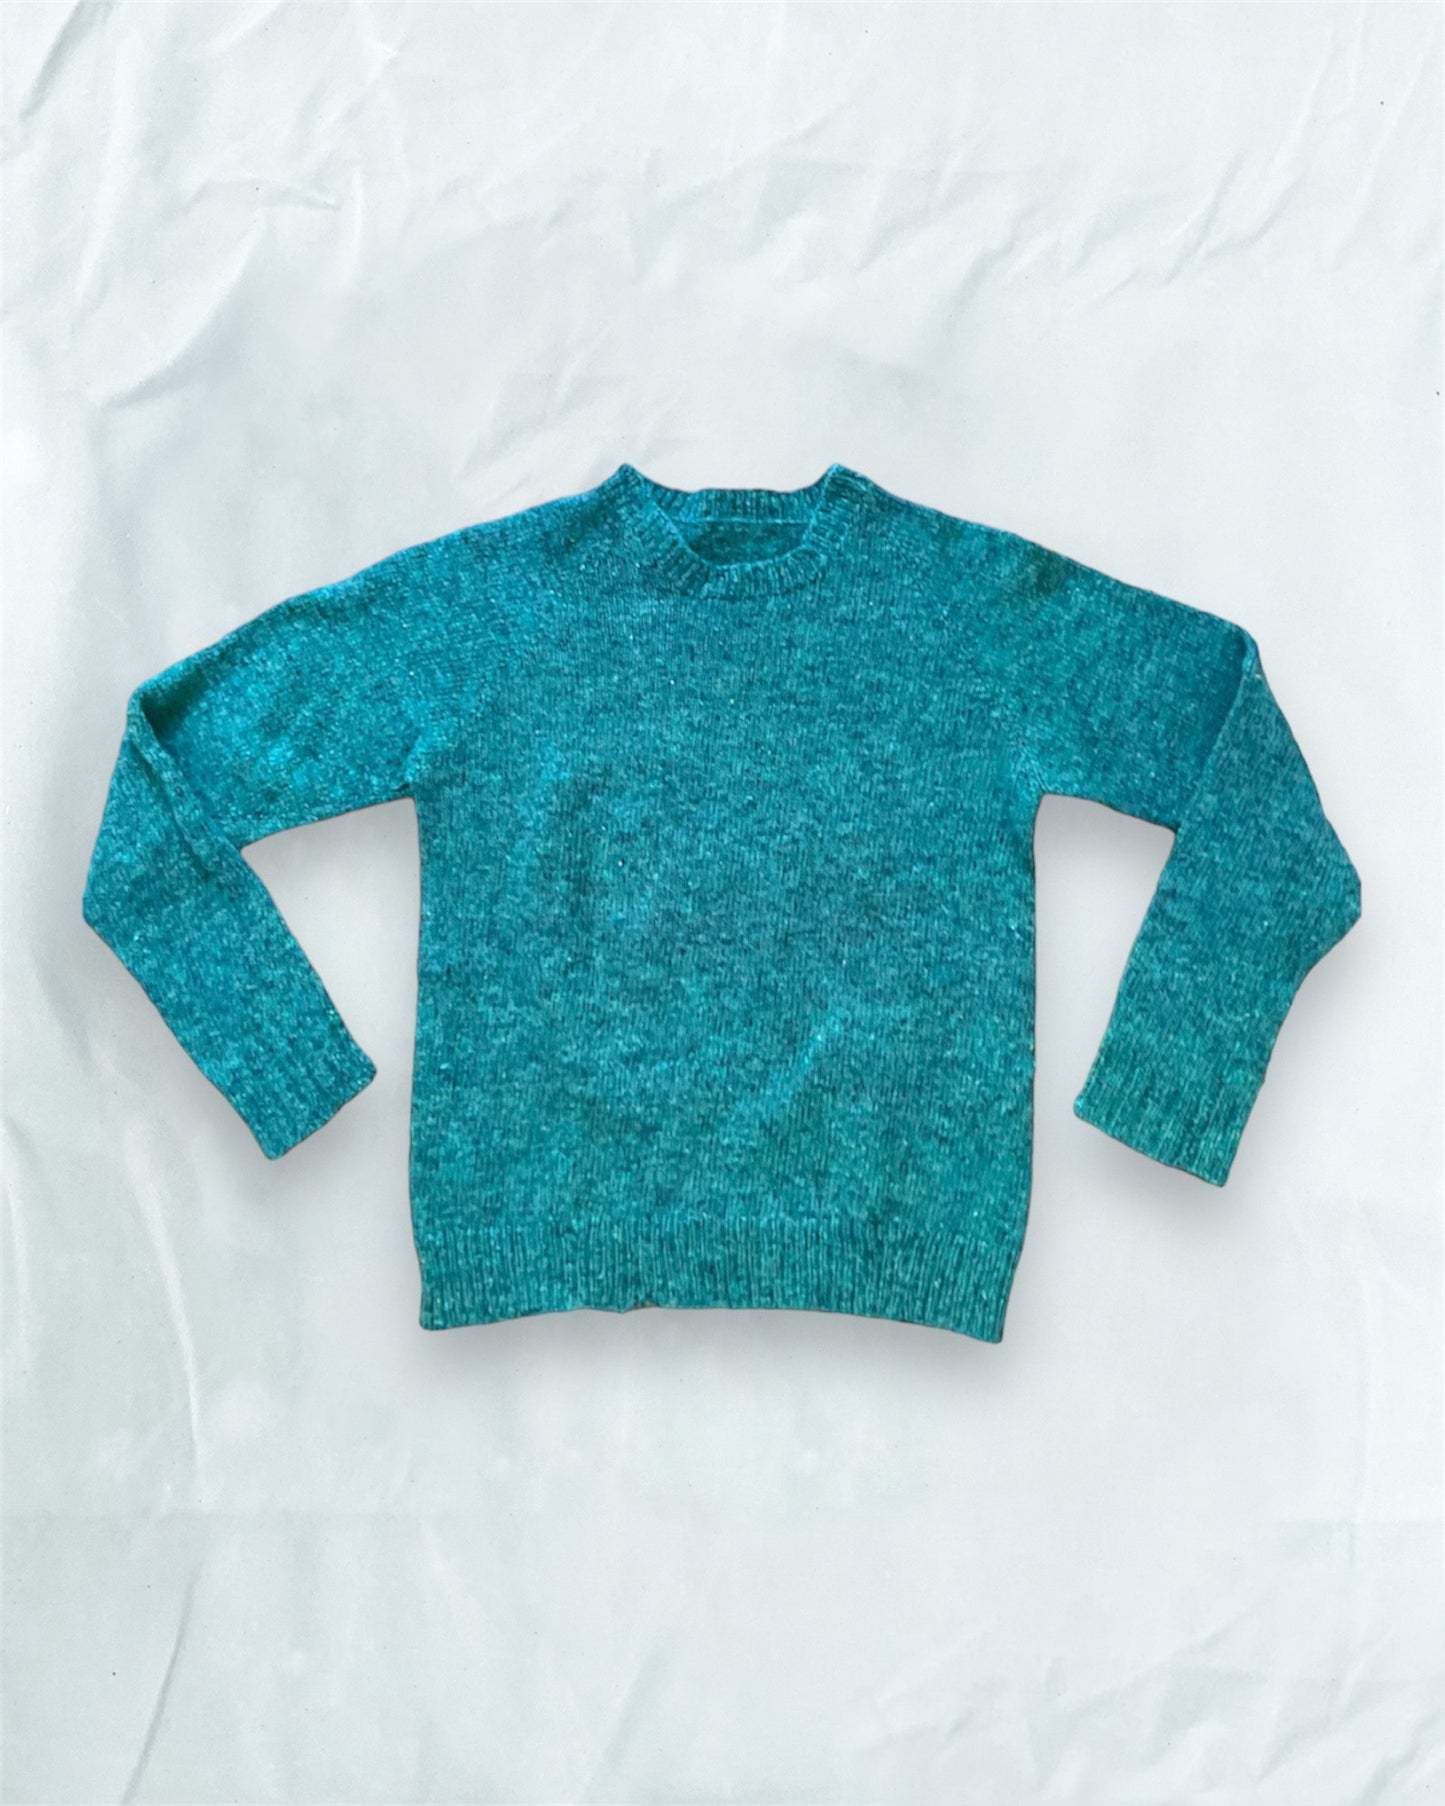 Teal Green 100% Wool Sweater